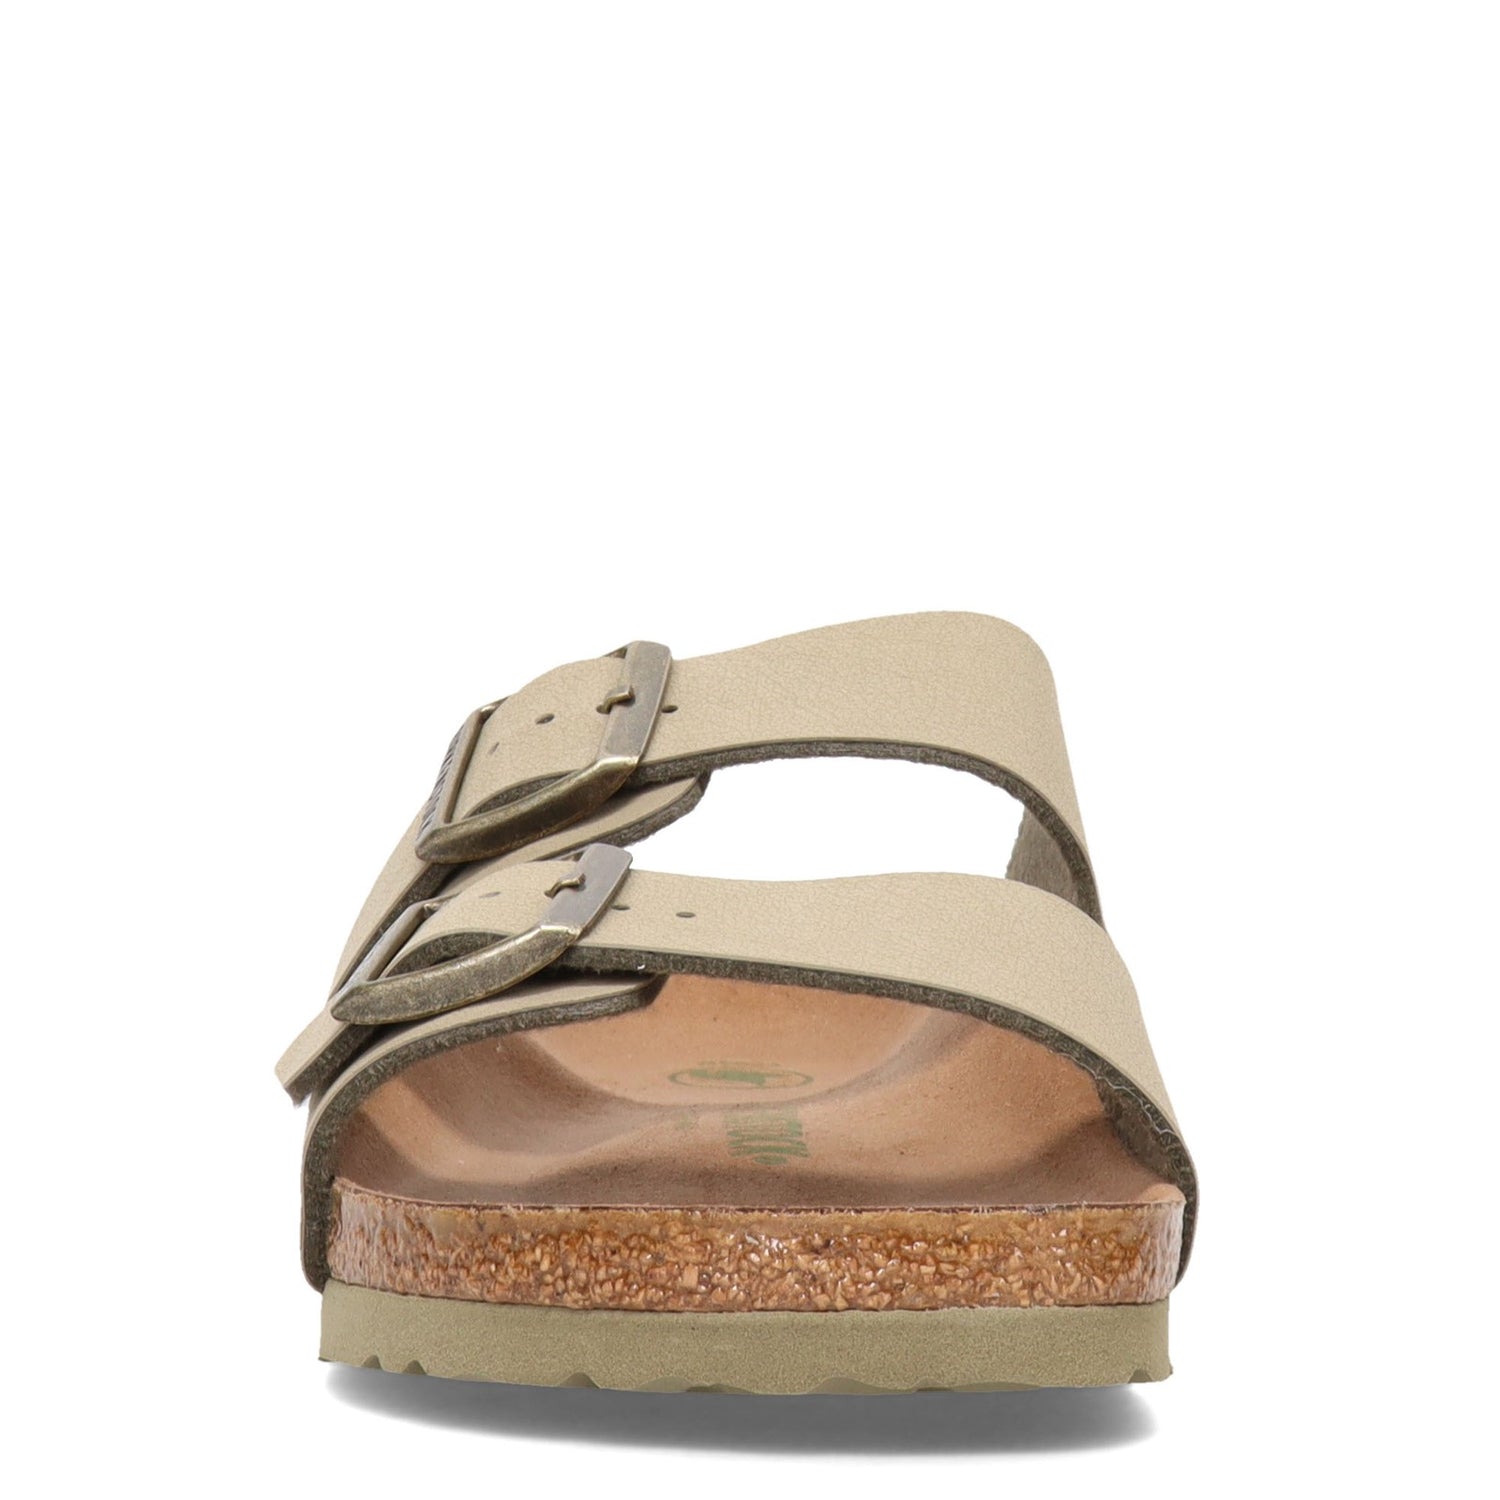 Peltz Shoes  Women's Birkenstock Arizona Slide Sandal - Narrow Width FADED KHAKI 1020 540 N